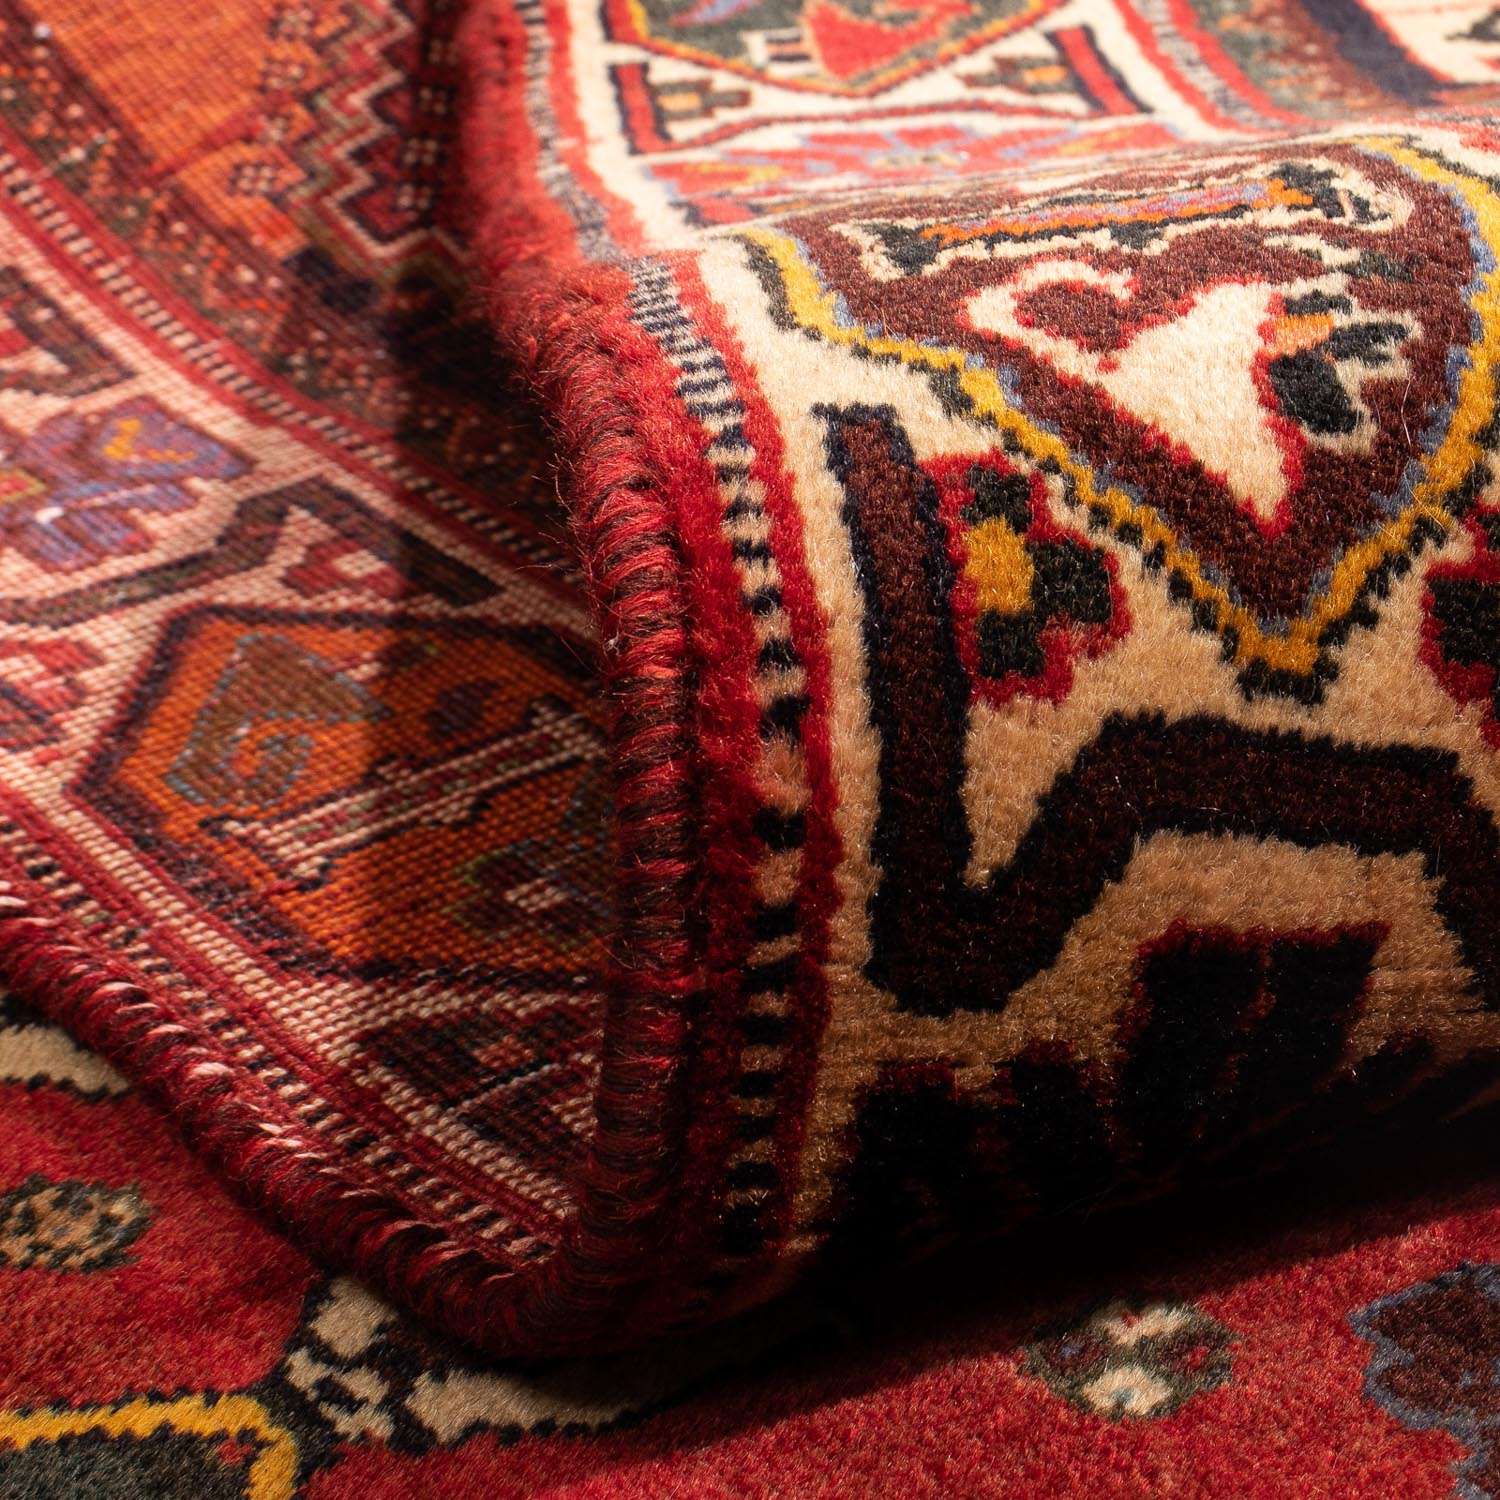 Persisk teppe - Nomadisk - 284 x 185 cm - mørk rød